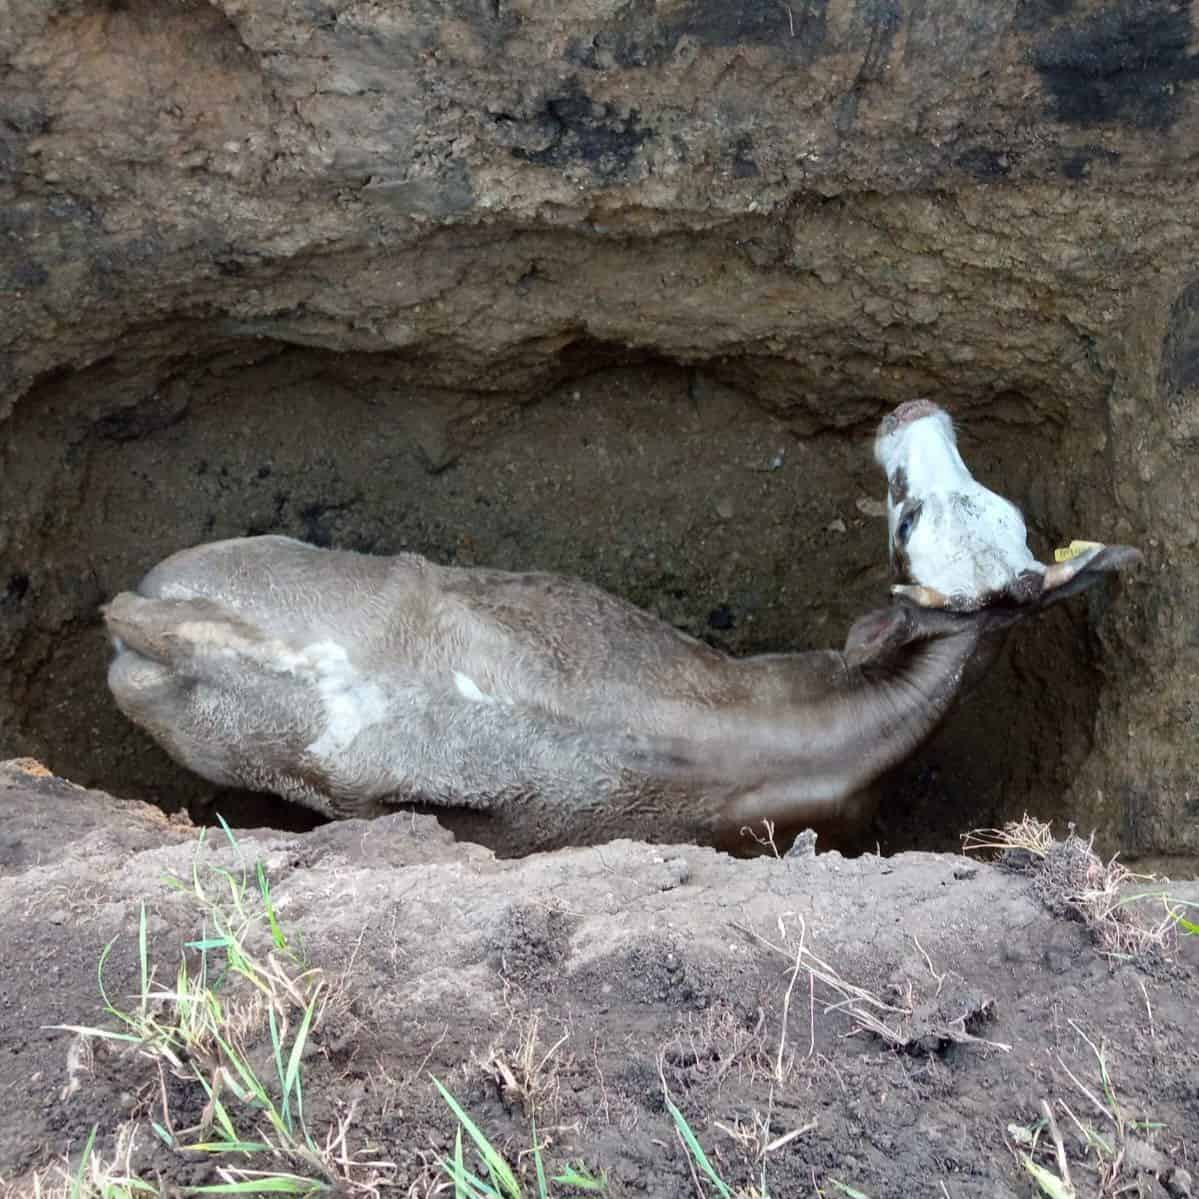 В Шебалино пожарные вытащили из ямы бодливую корову 